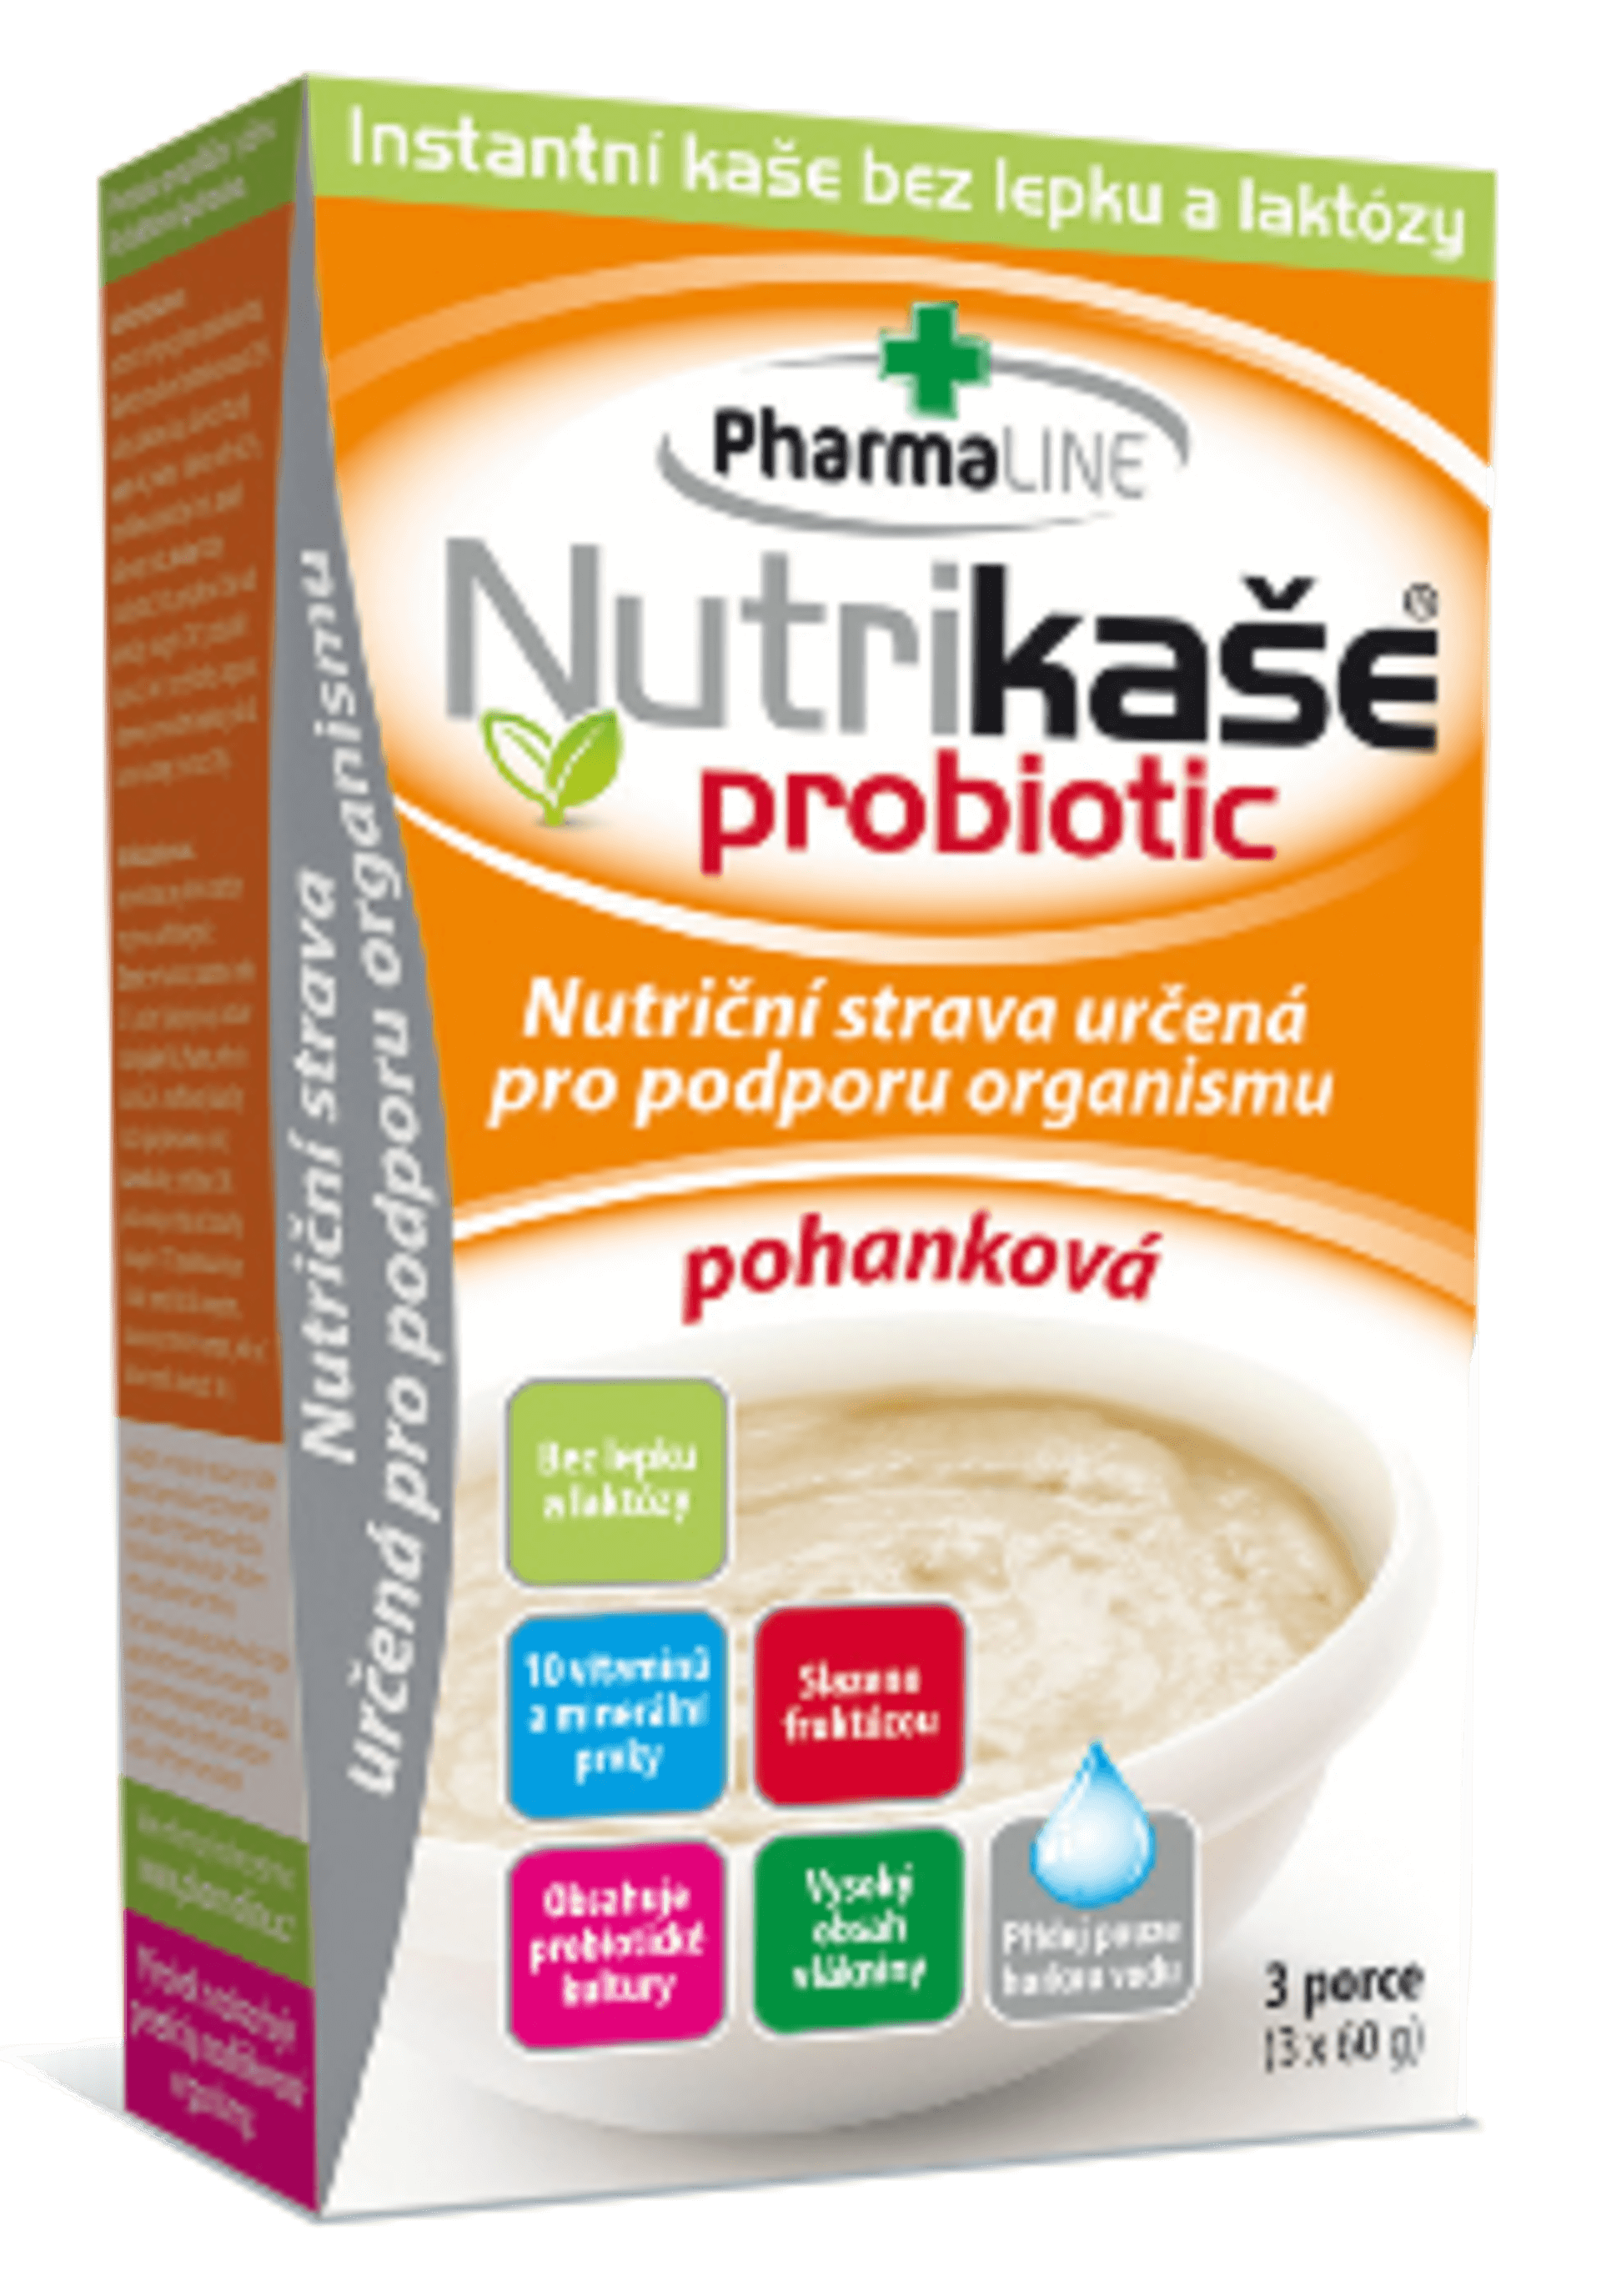 E-shop Mogador Nutrikaše Probiotic pohánková 180 g